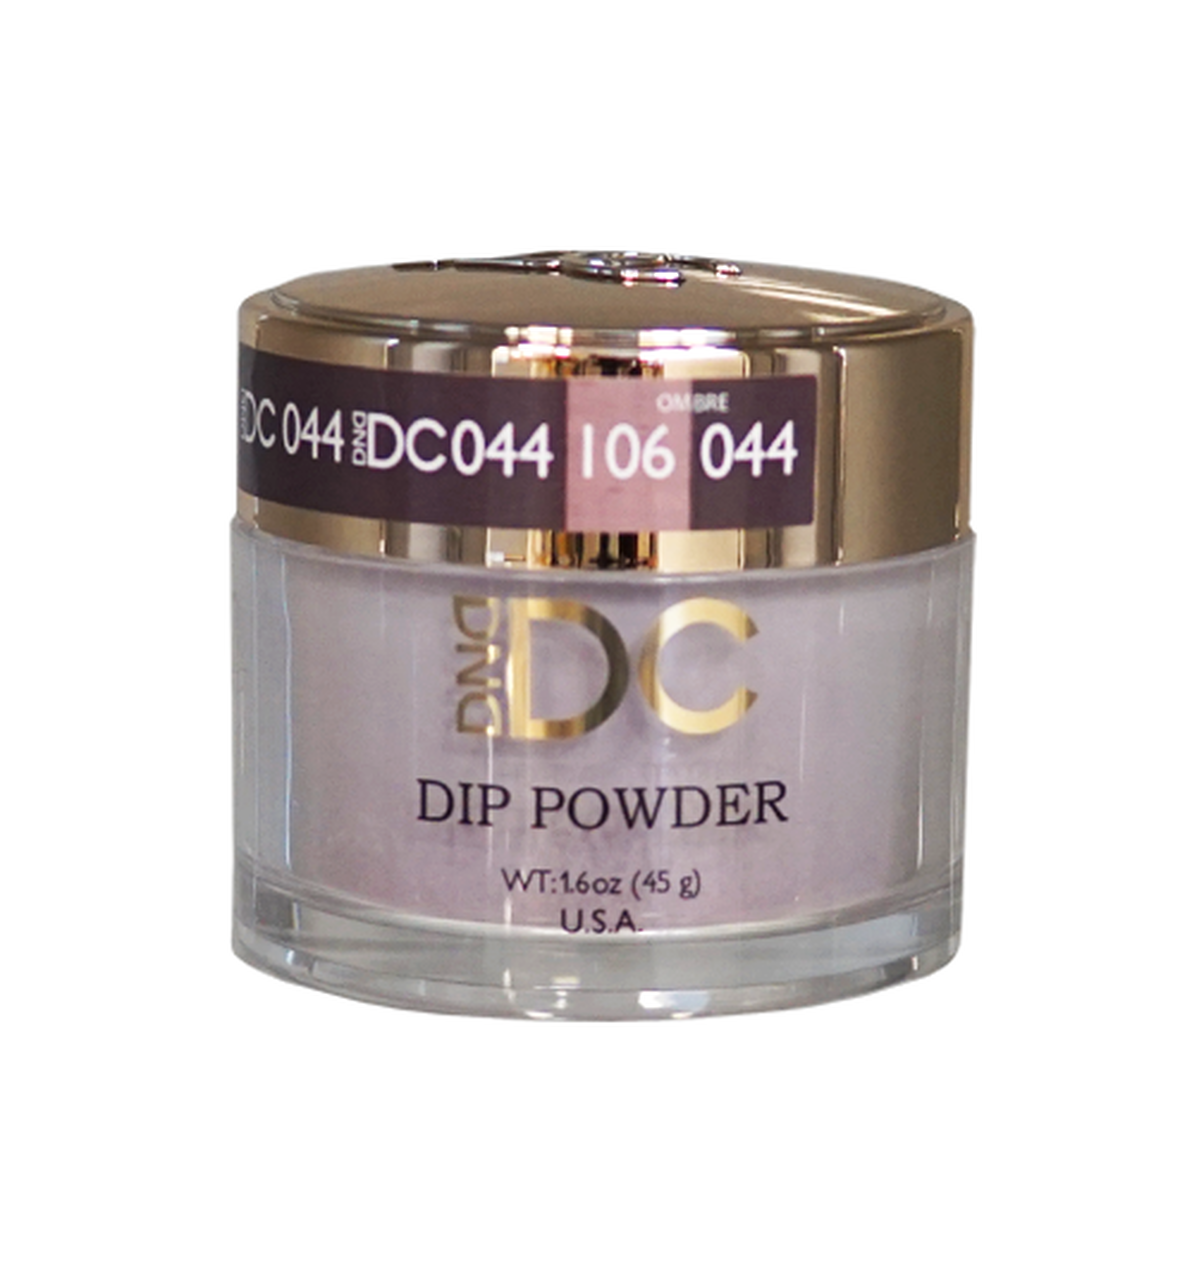 DND DC Acrylic & Dip Powder - DC044 London Bridge